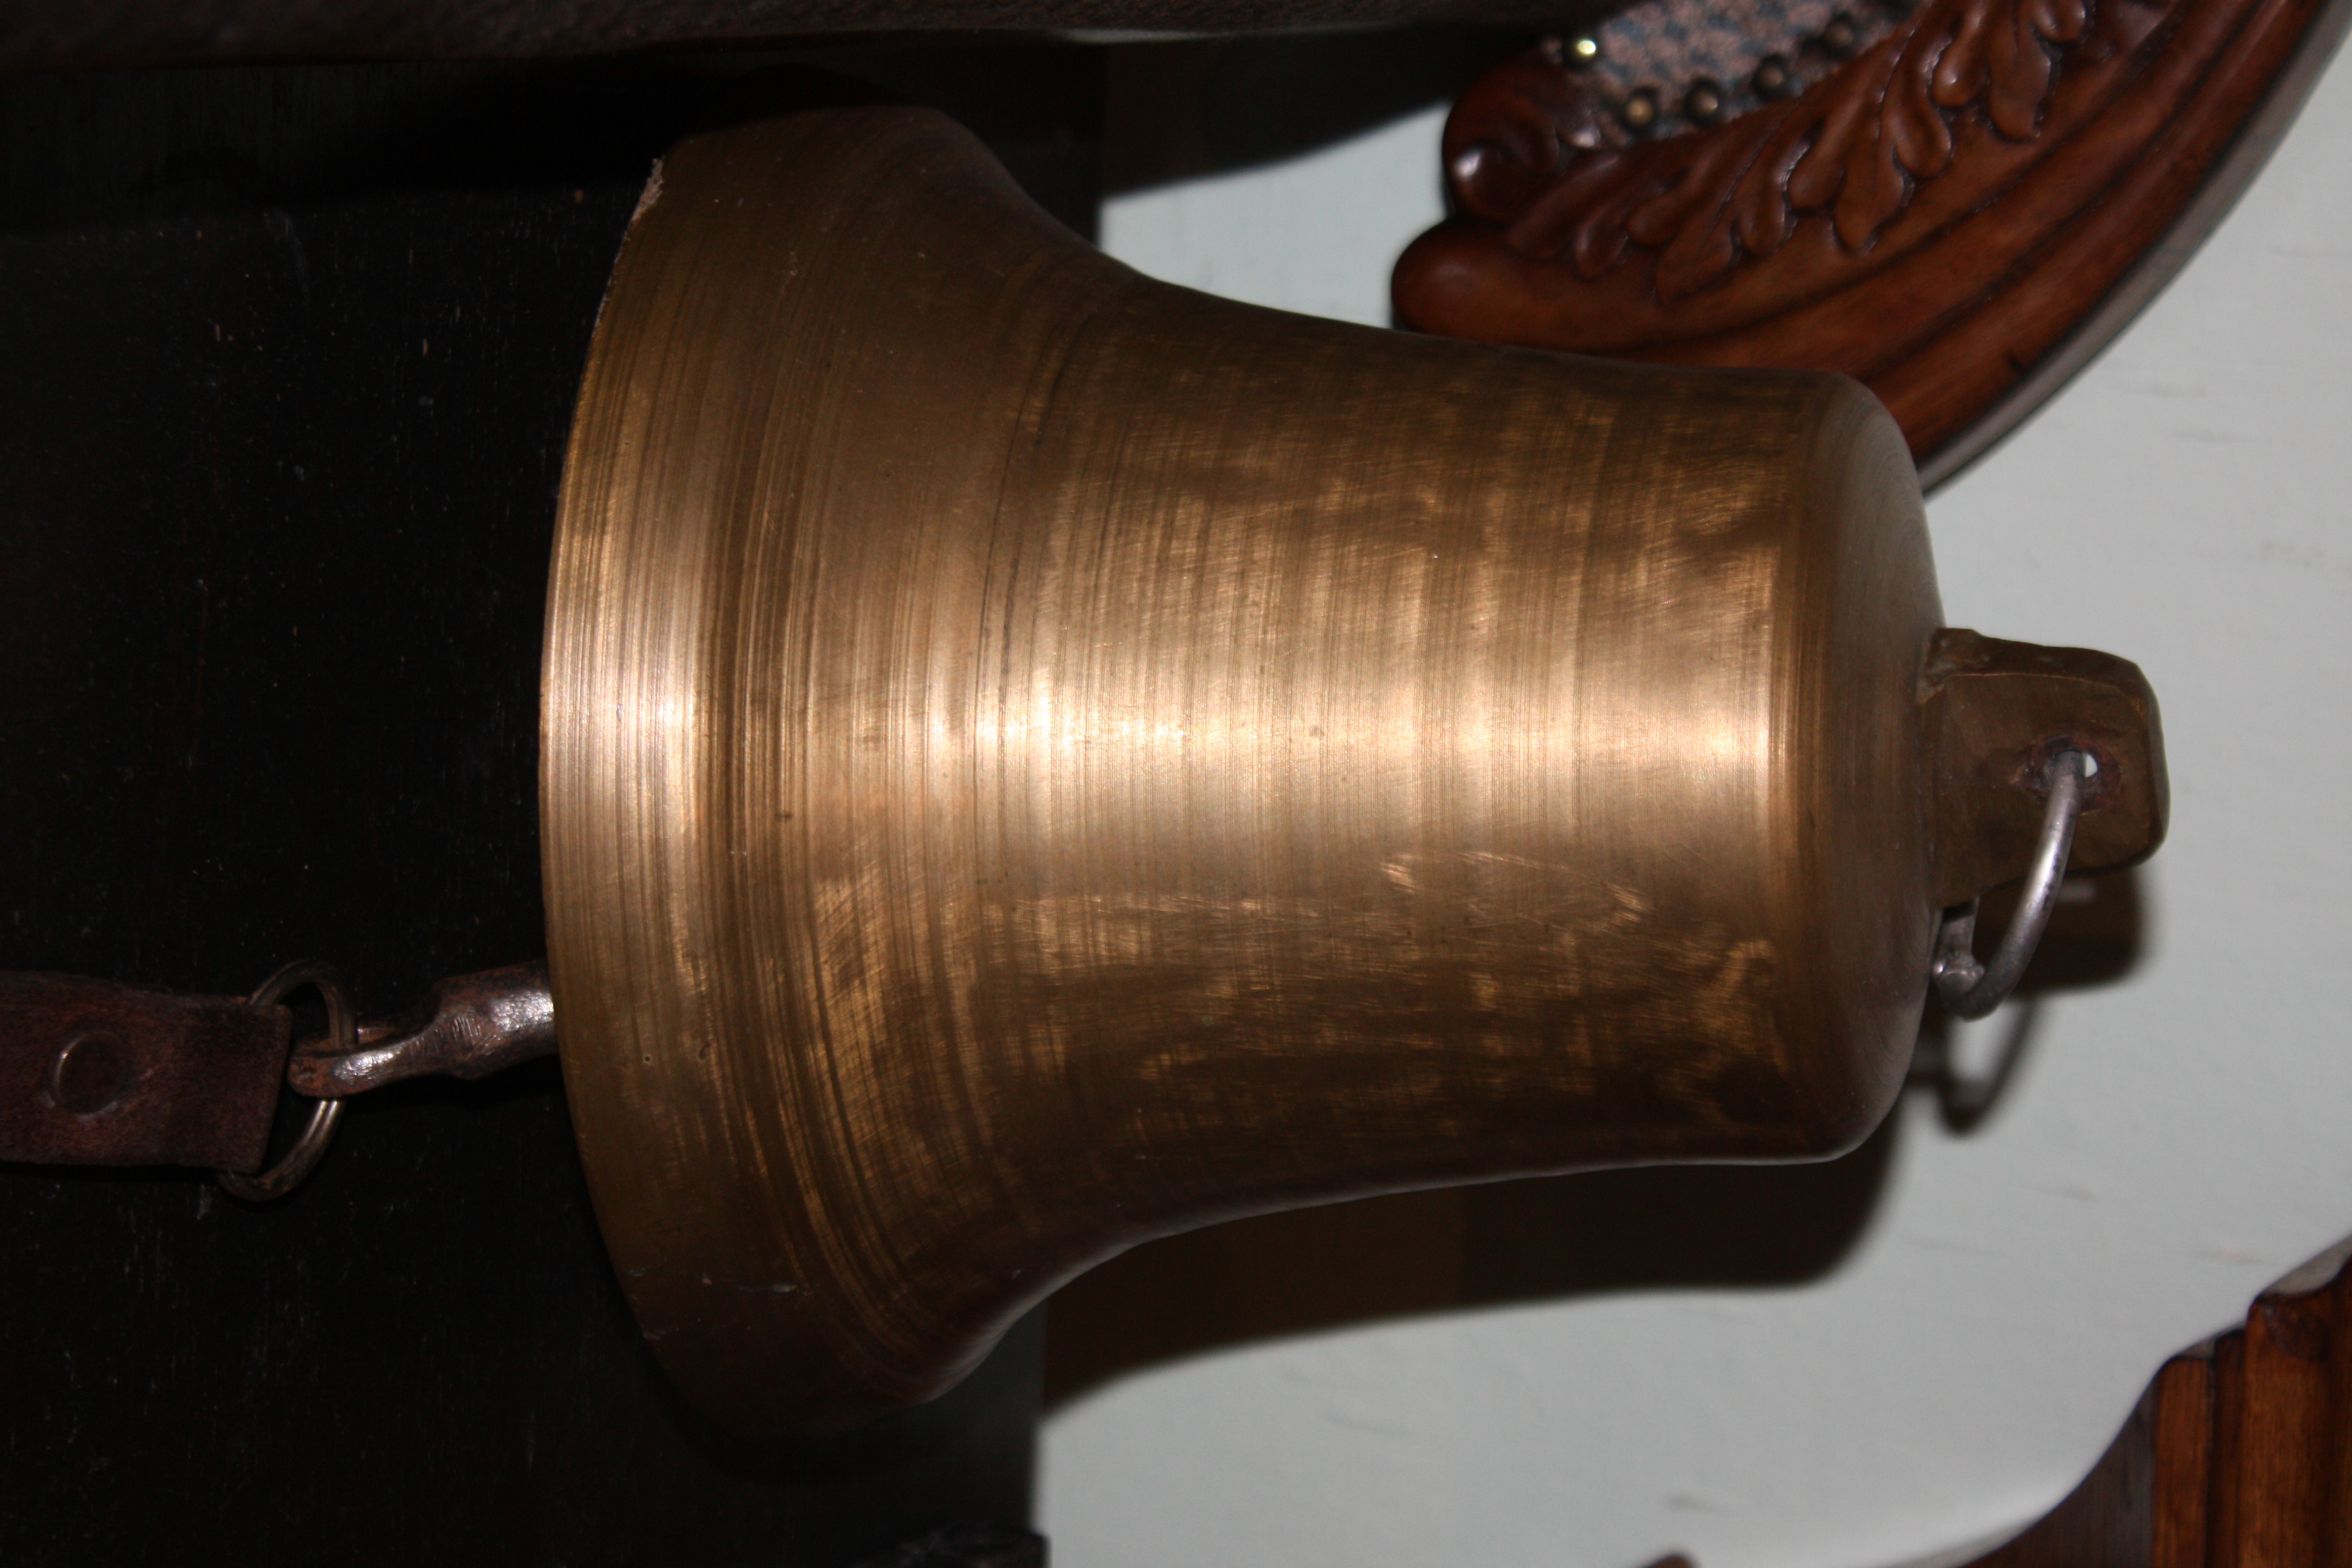 A bronze ship's bell